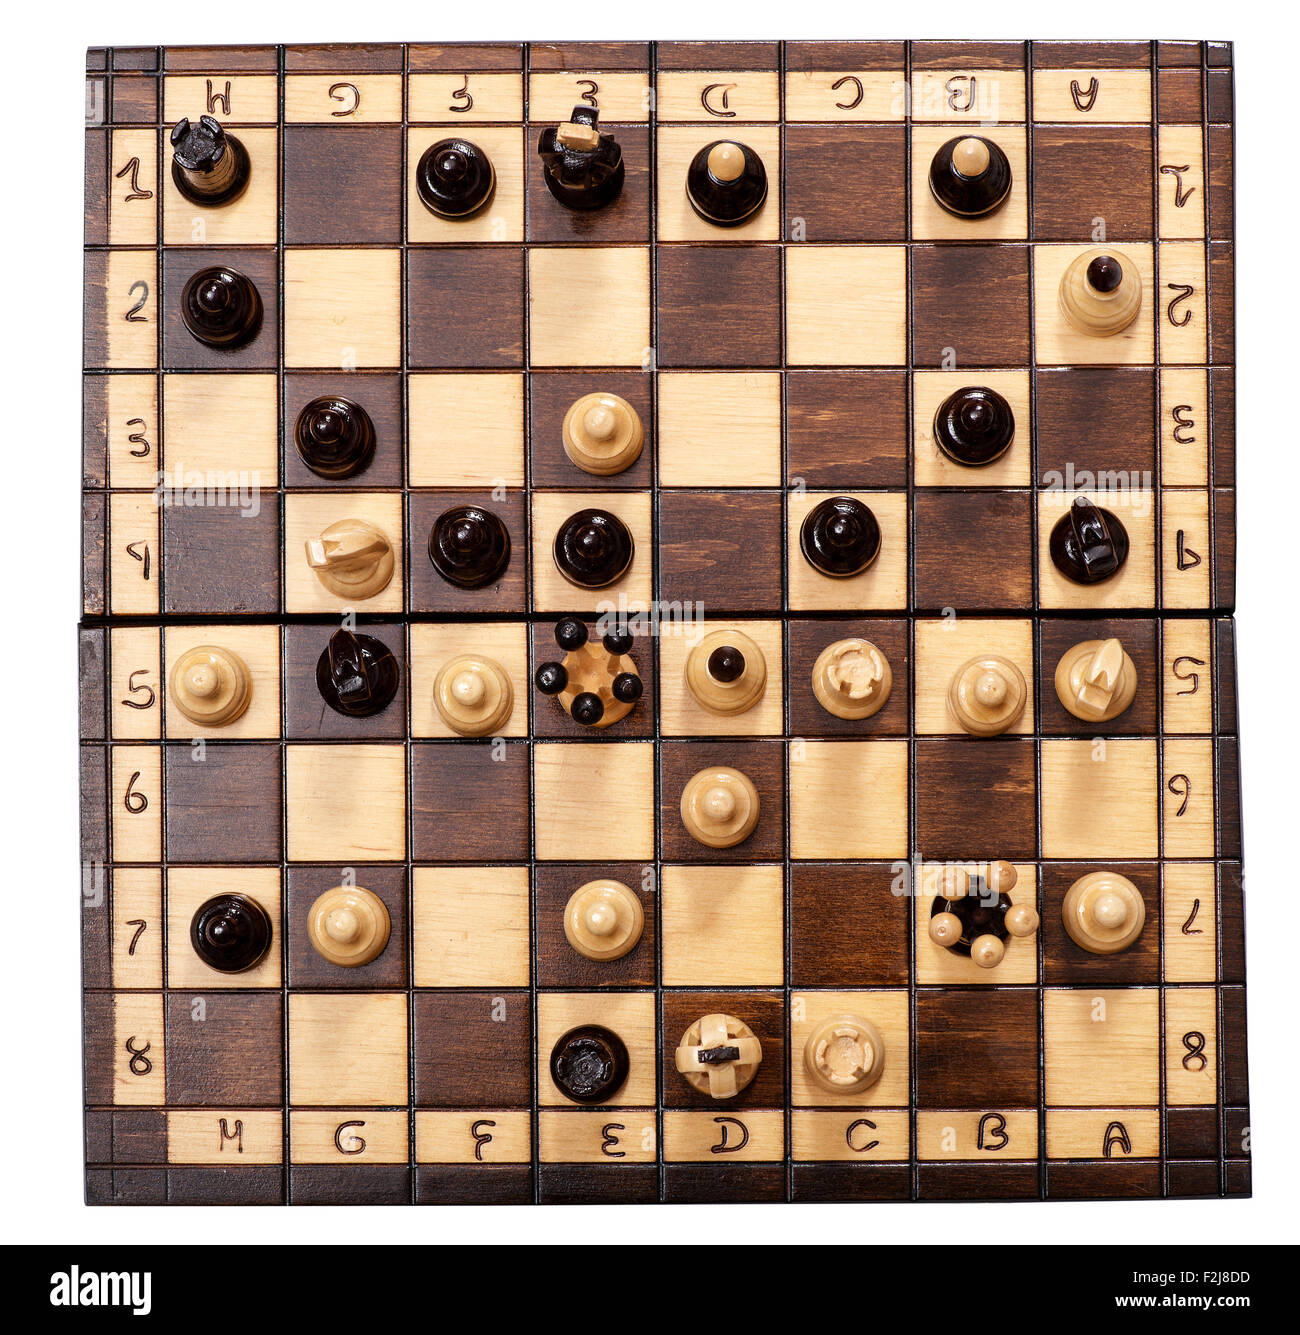 Vue aérienne d'une partie d'échecs en cours Banque D'Images